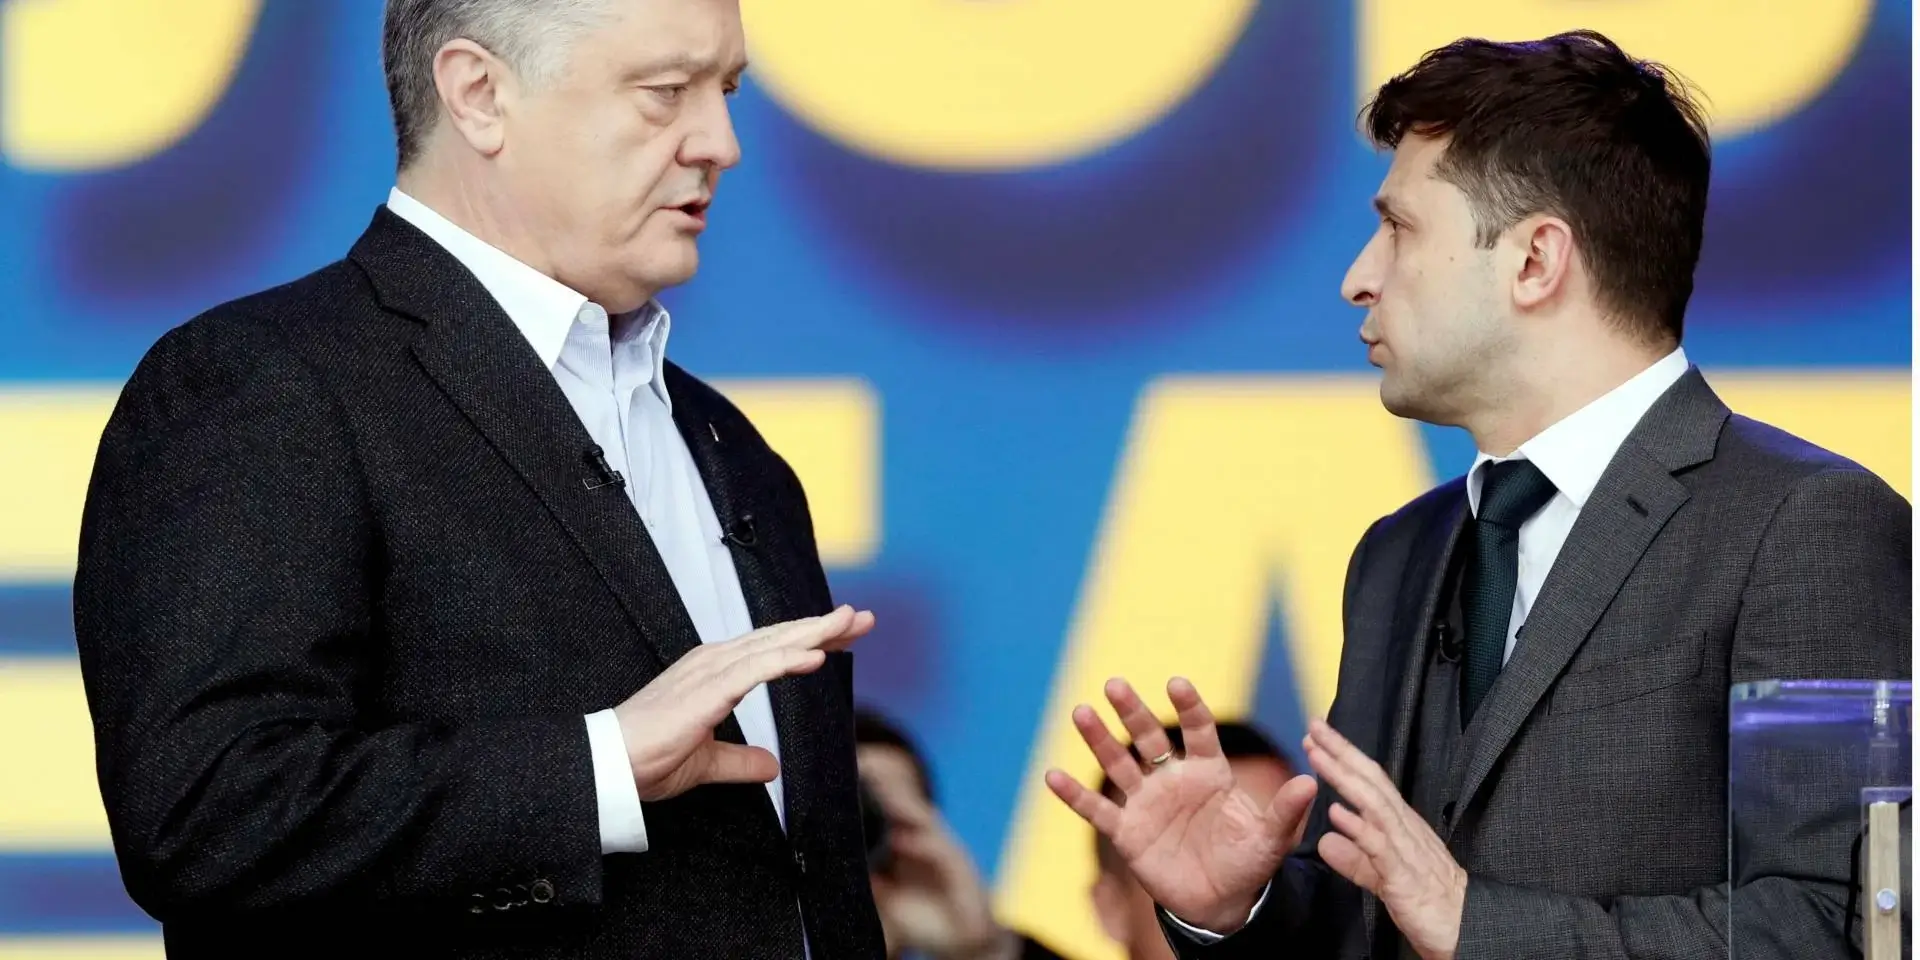 Баттл Зеленский-Порошенко: лидеры уже почти на равных, но много неопределившихся